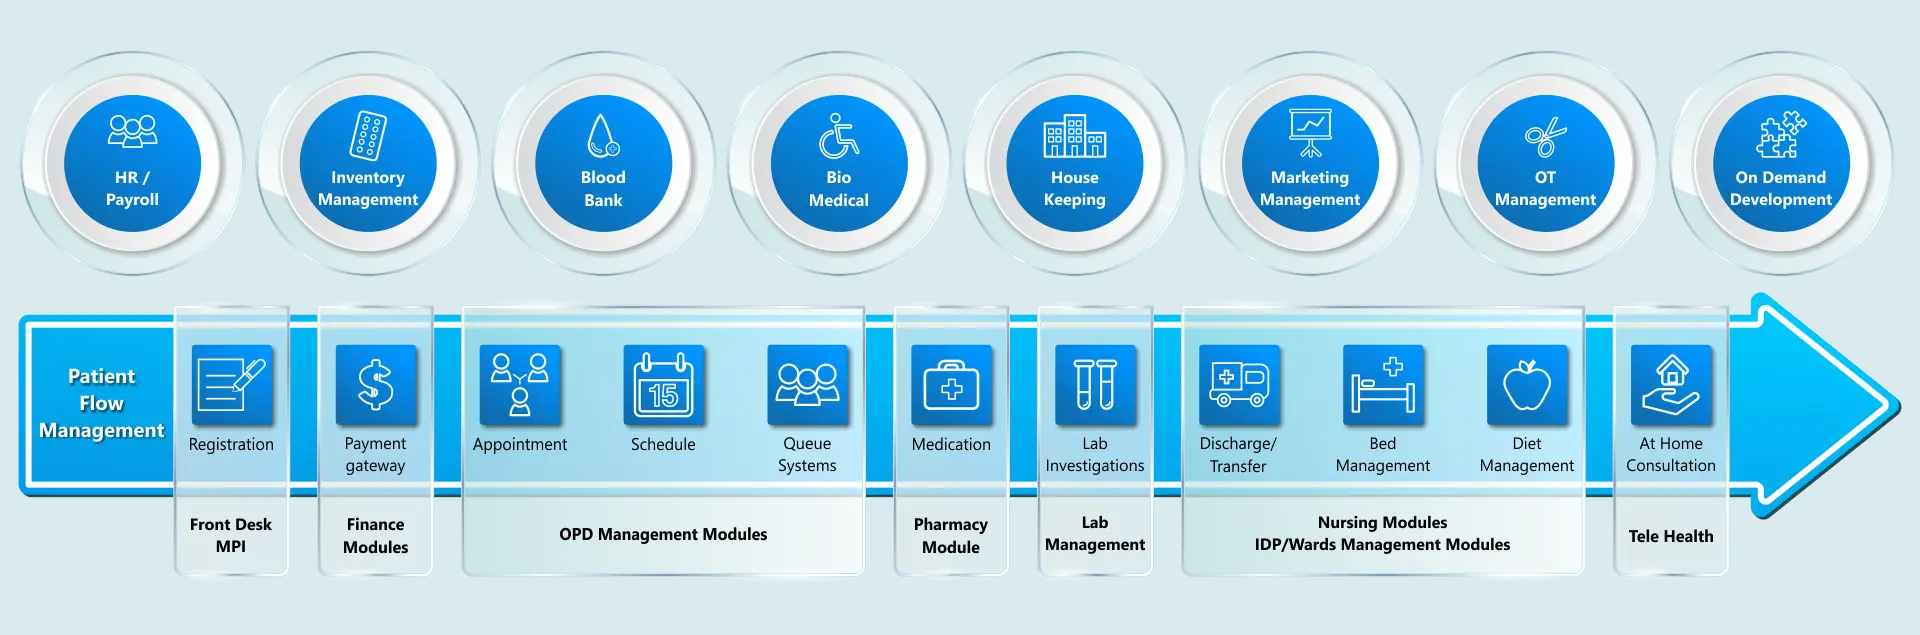 hospital information management system software workflow